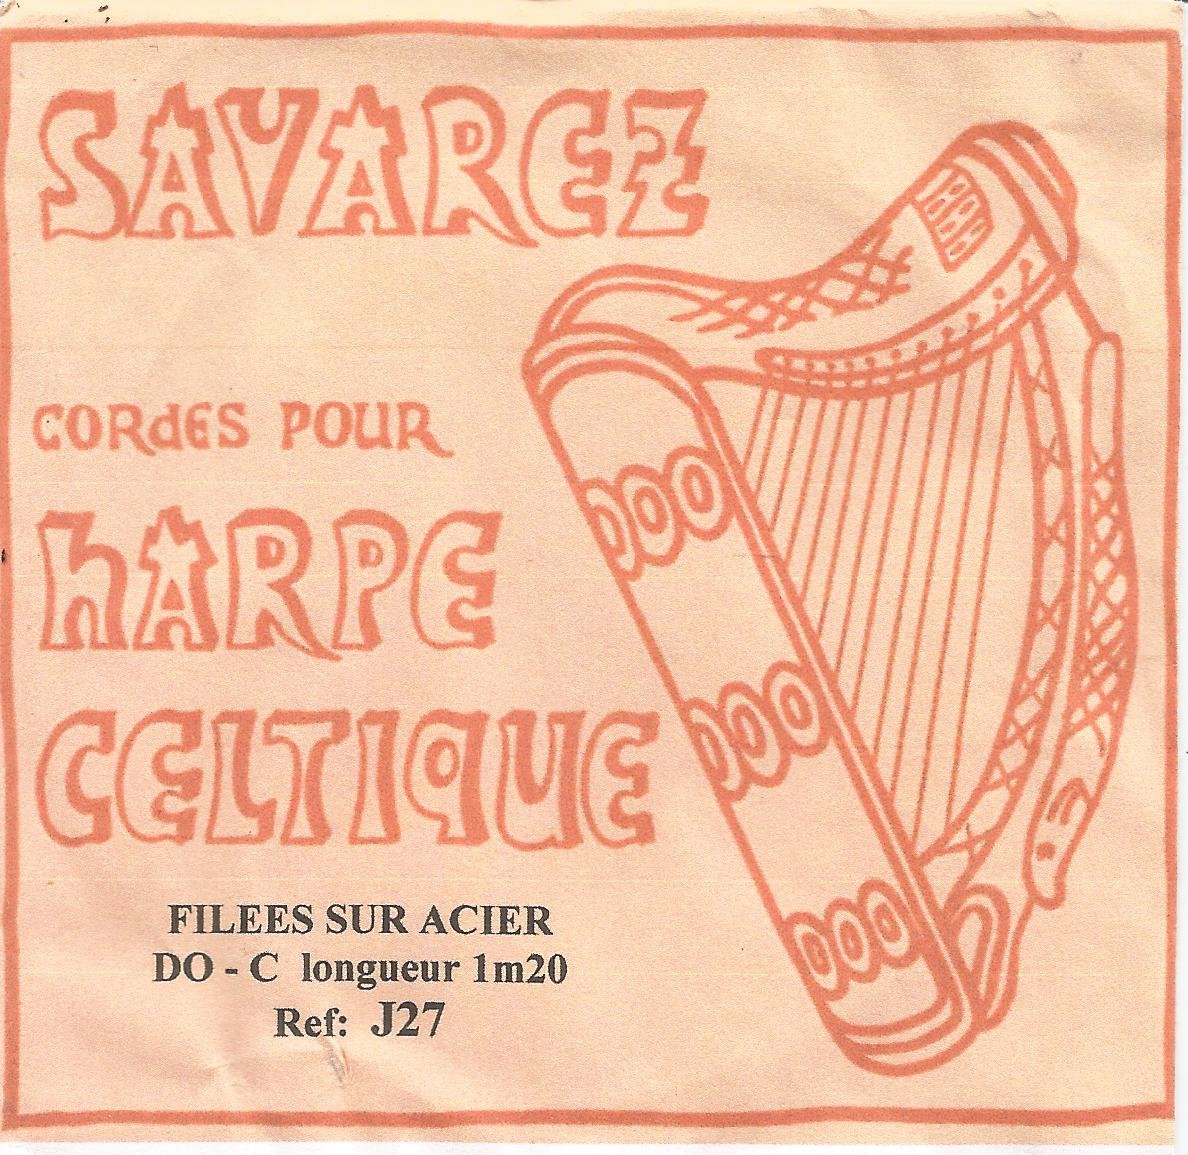 Cordes basses pour harpes celtiques – Savarez